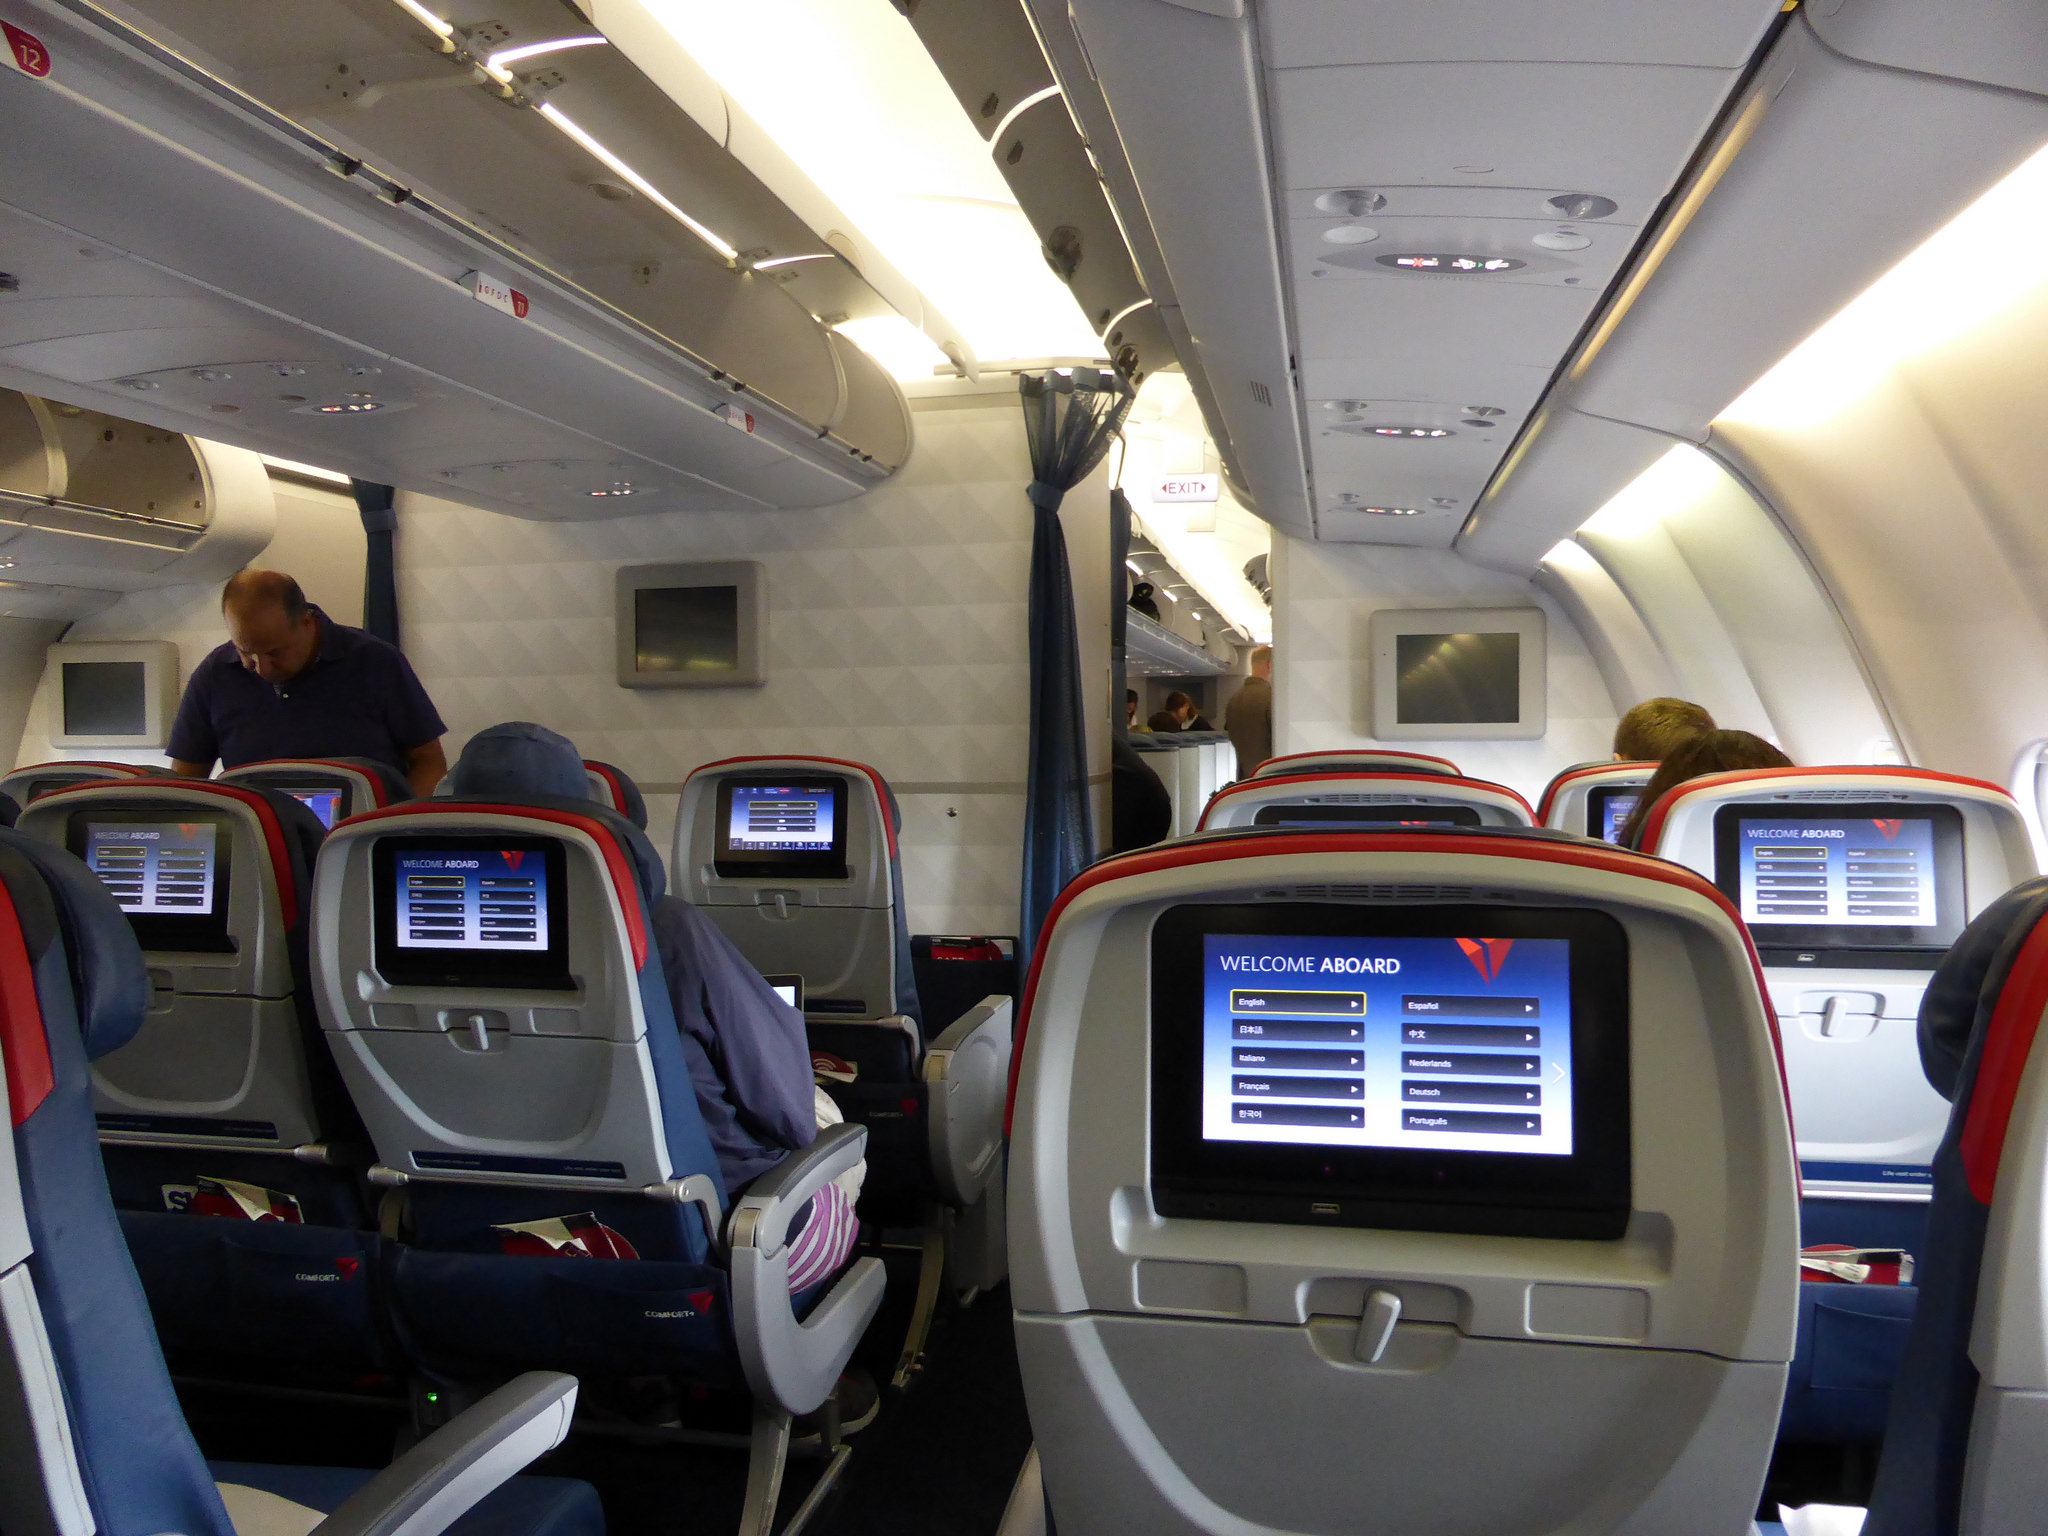 Utilitaires ou de loisirs, les systèmes embarqués sont nombreux dans les avions. © Citizen59, Flickr, CC by-sa 2.0